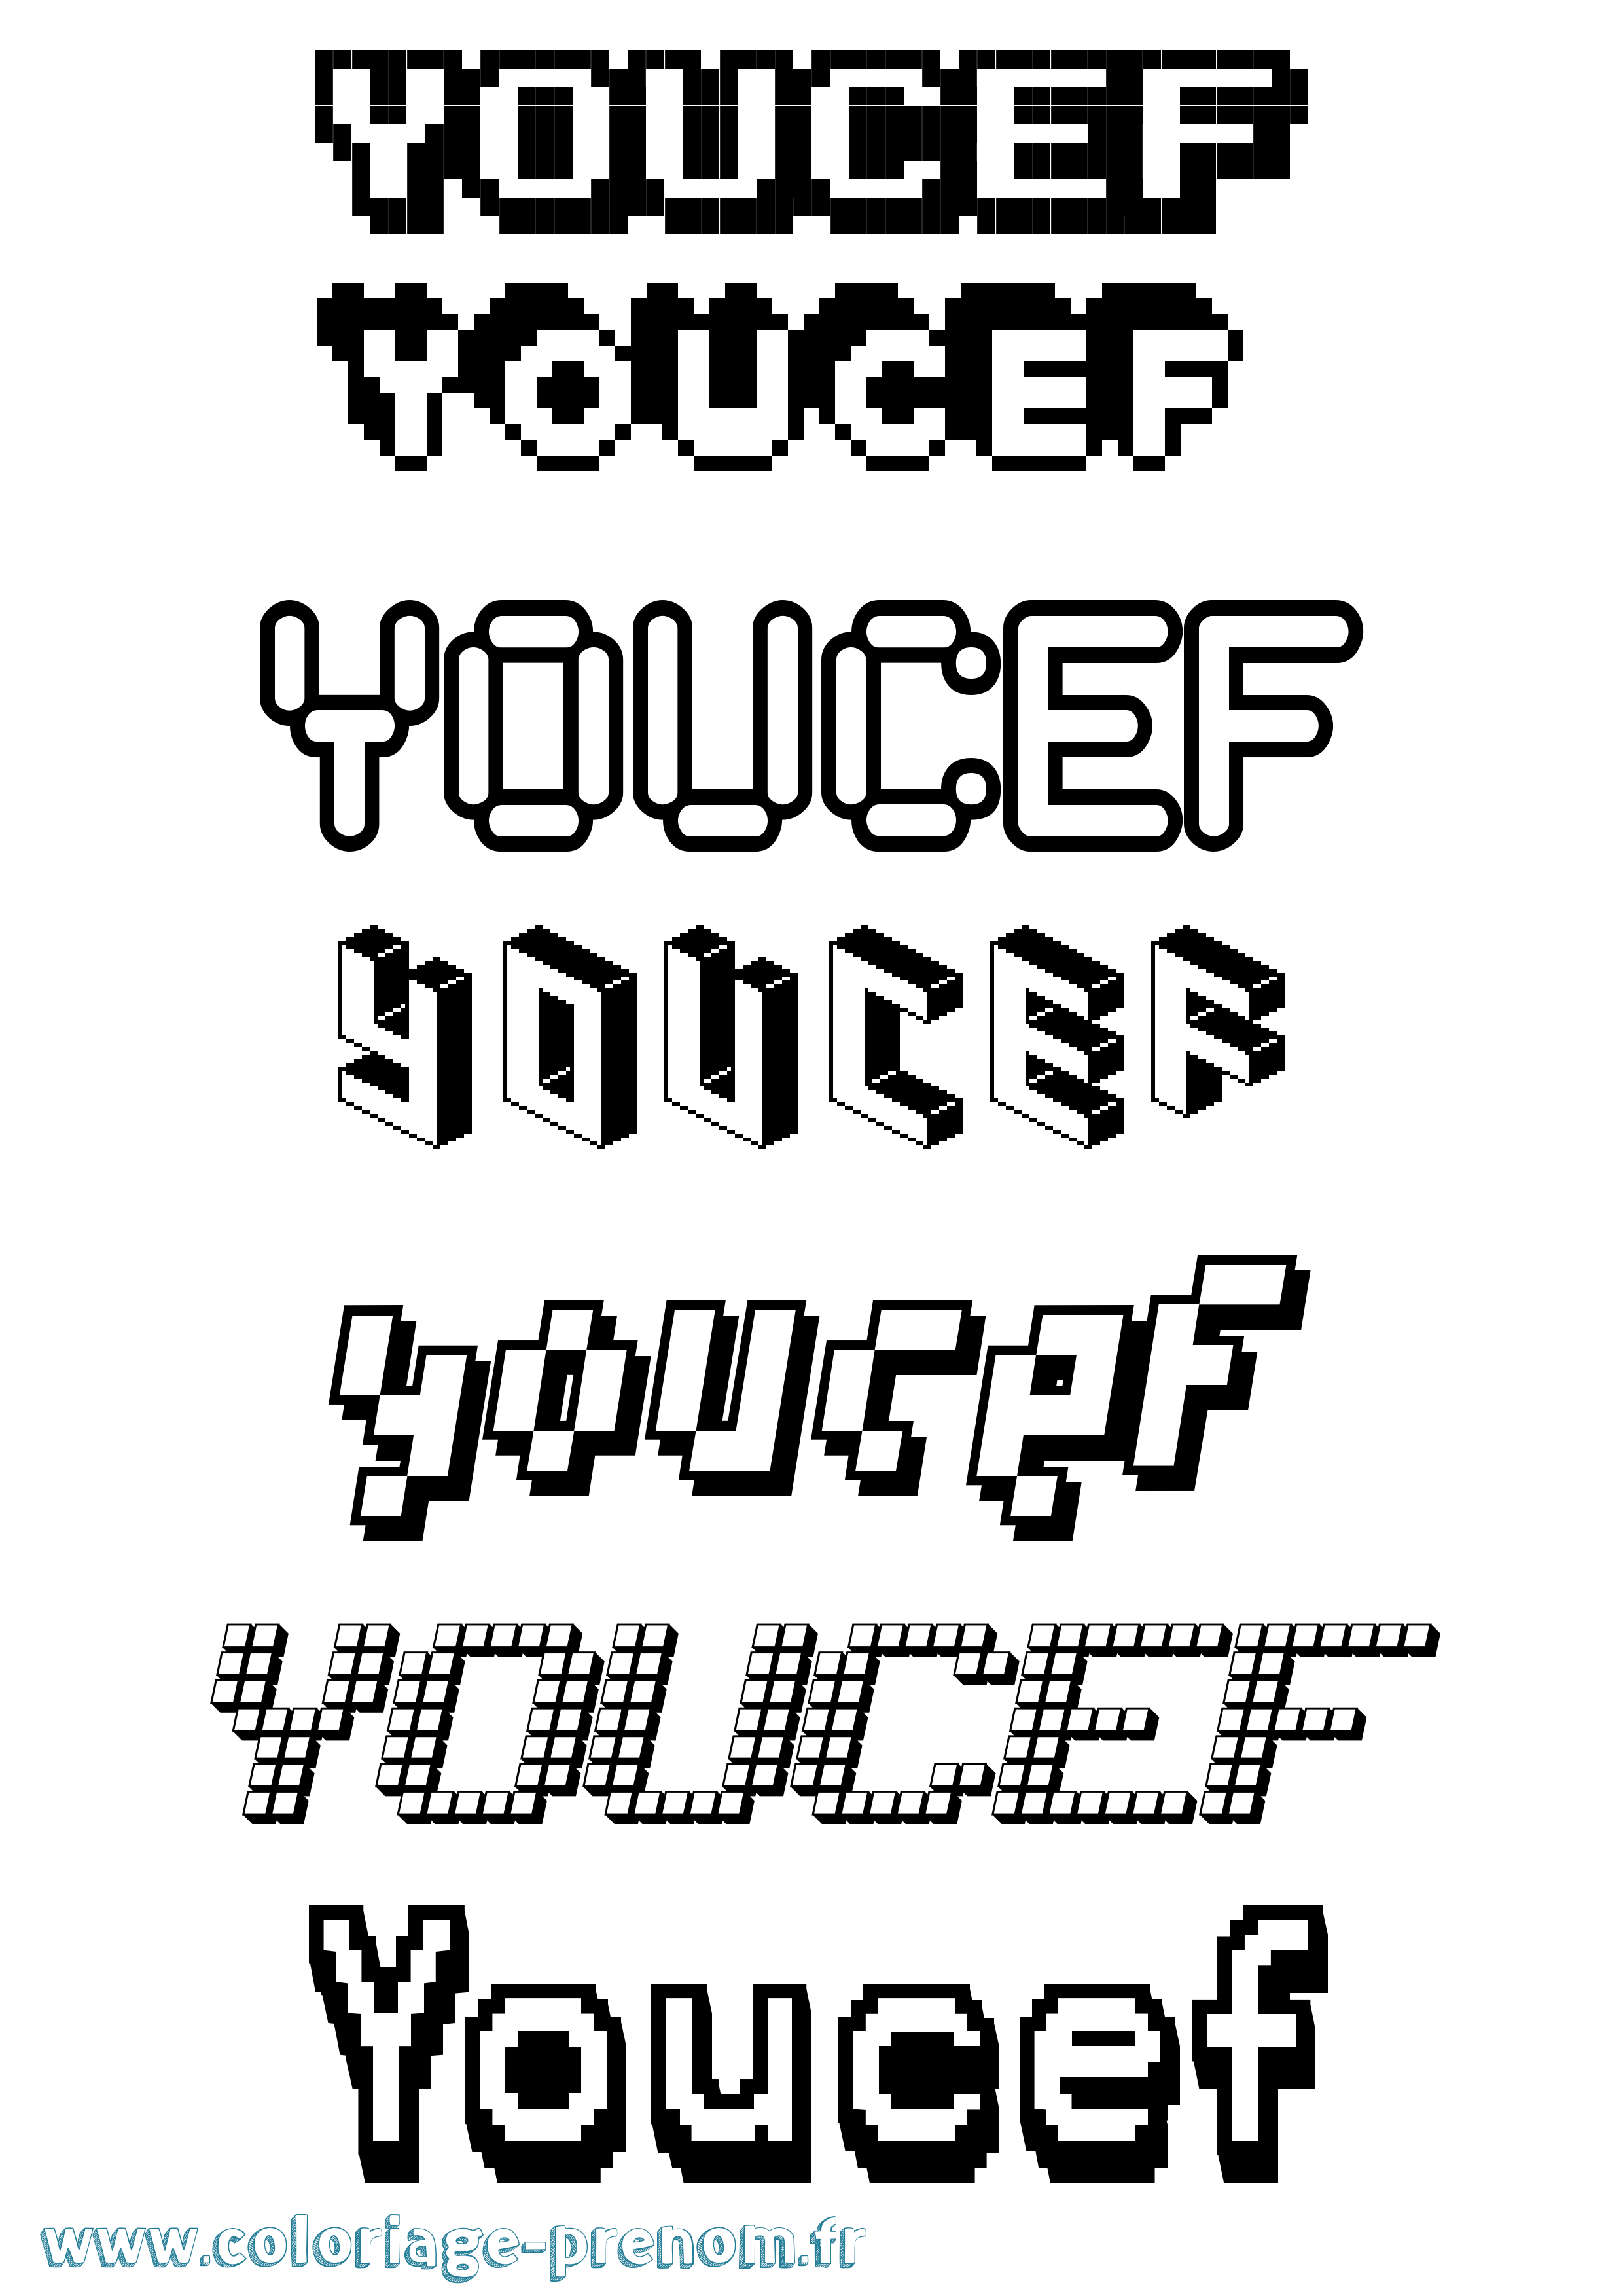 Coloriage prénom Youcef Pixel